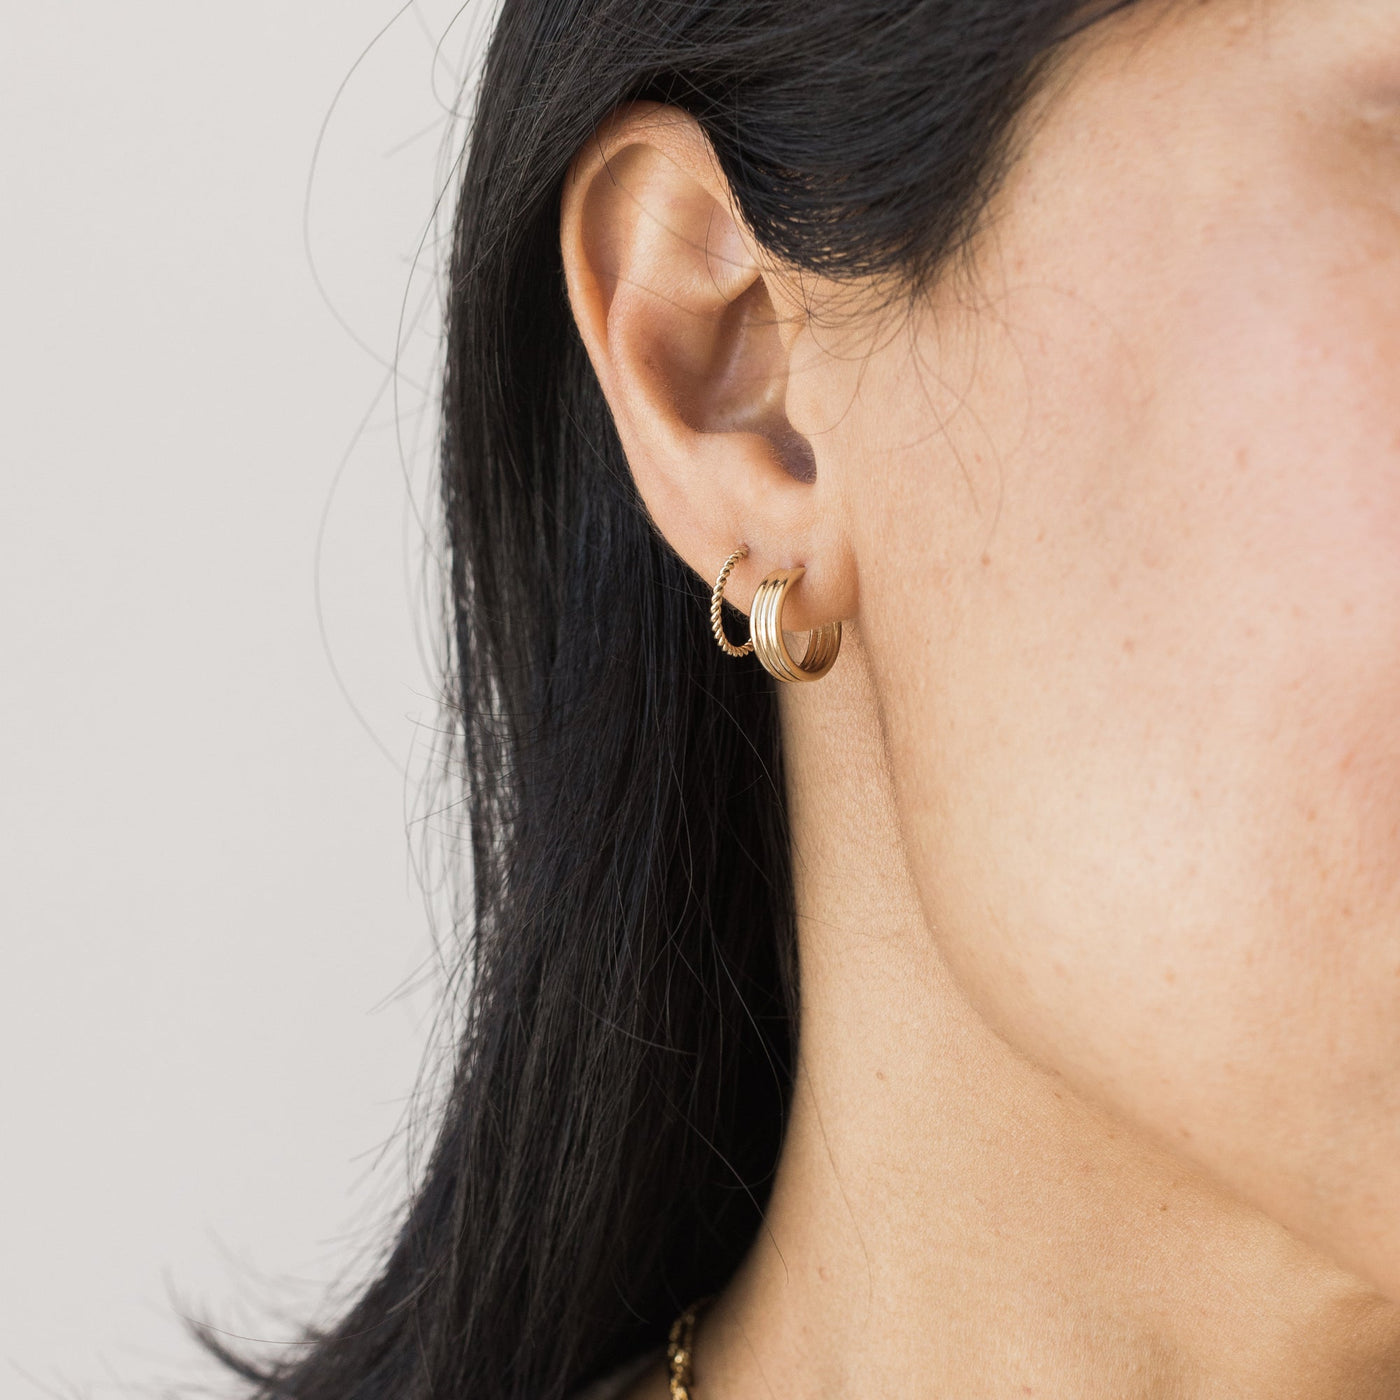 18ct gold plated silver earrings, braided hoop earrings, 20 mm